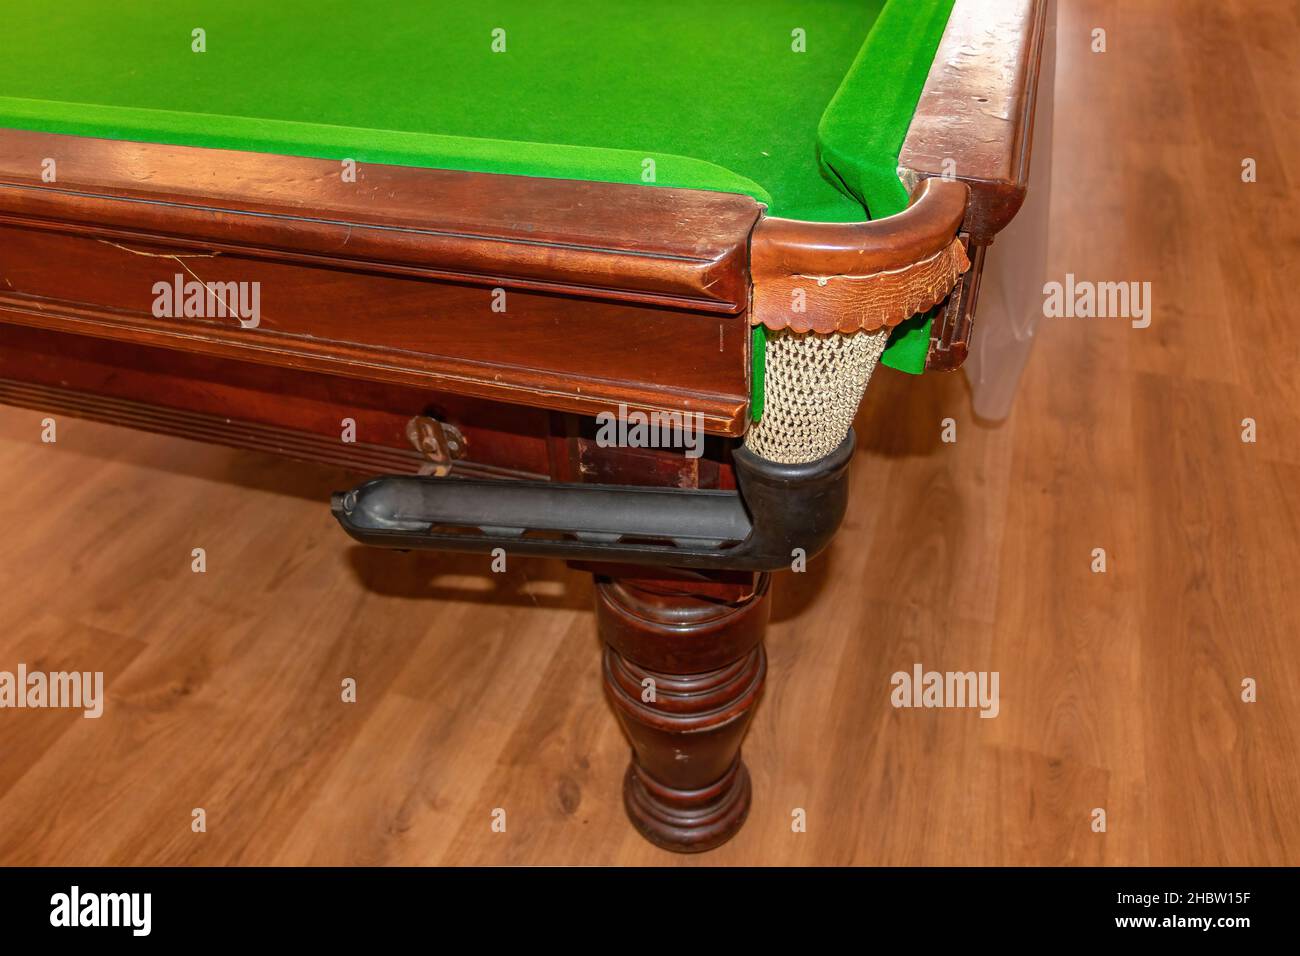 Detail der Tasche eines alten Snooker-Tisches Stockfotografie - Alamy